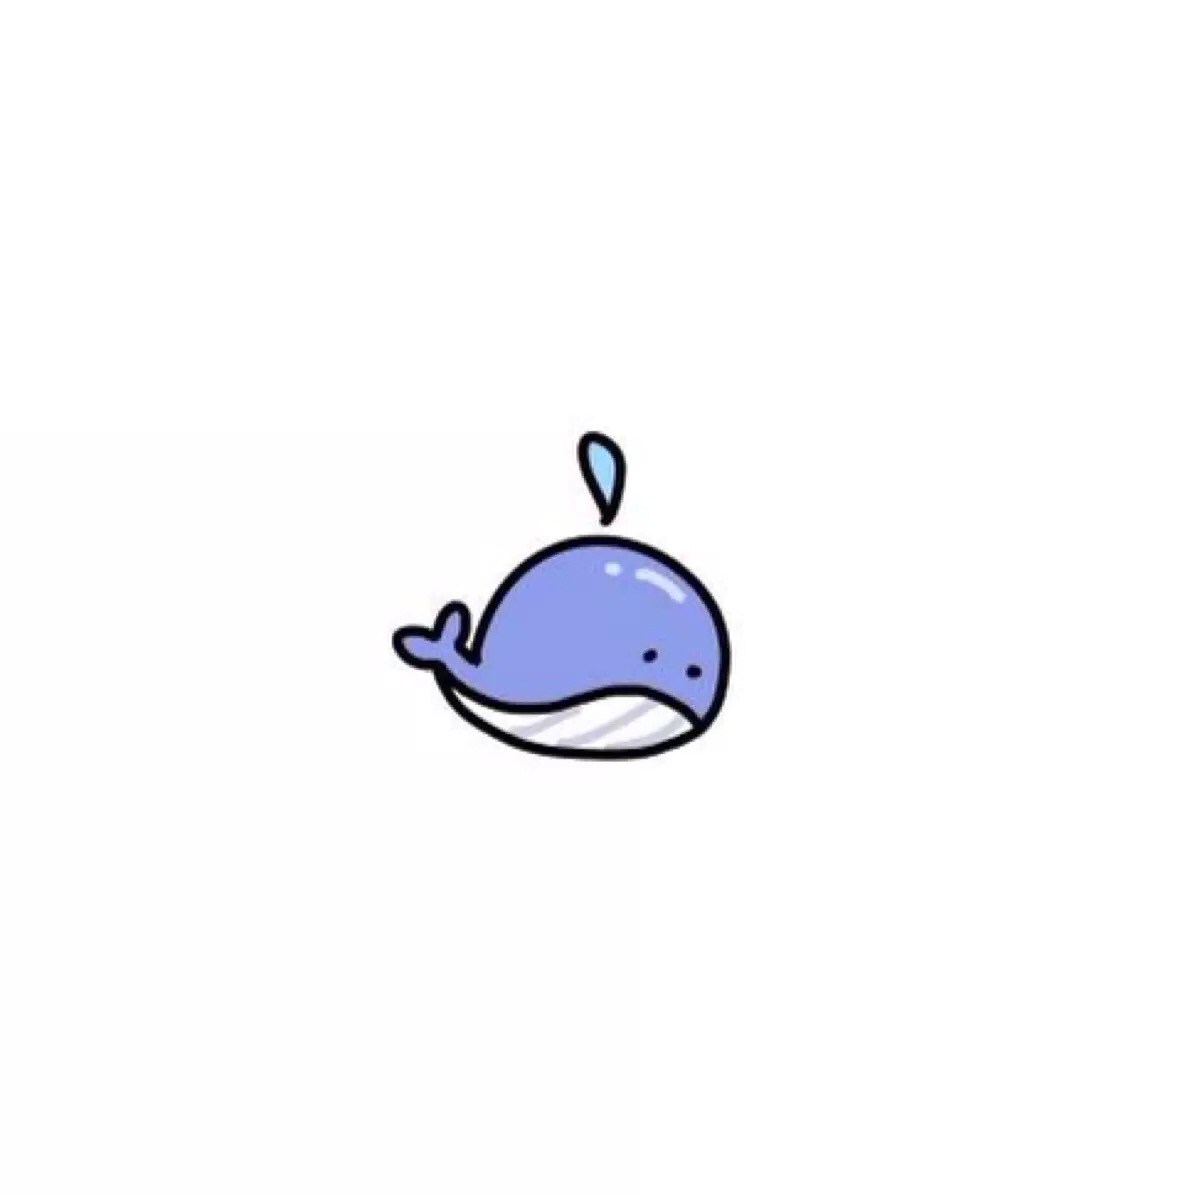 小鲸鱼 